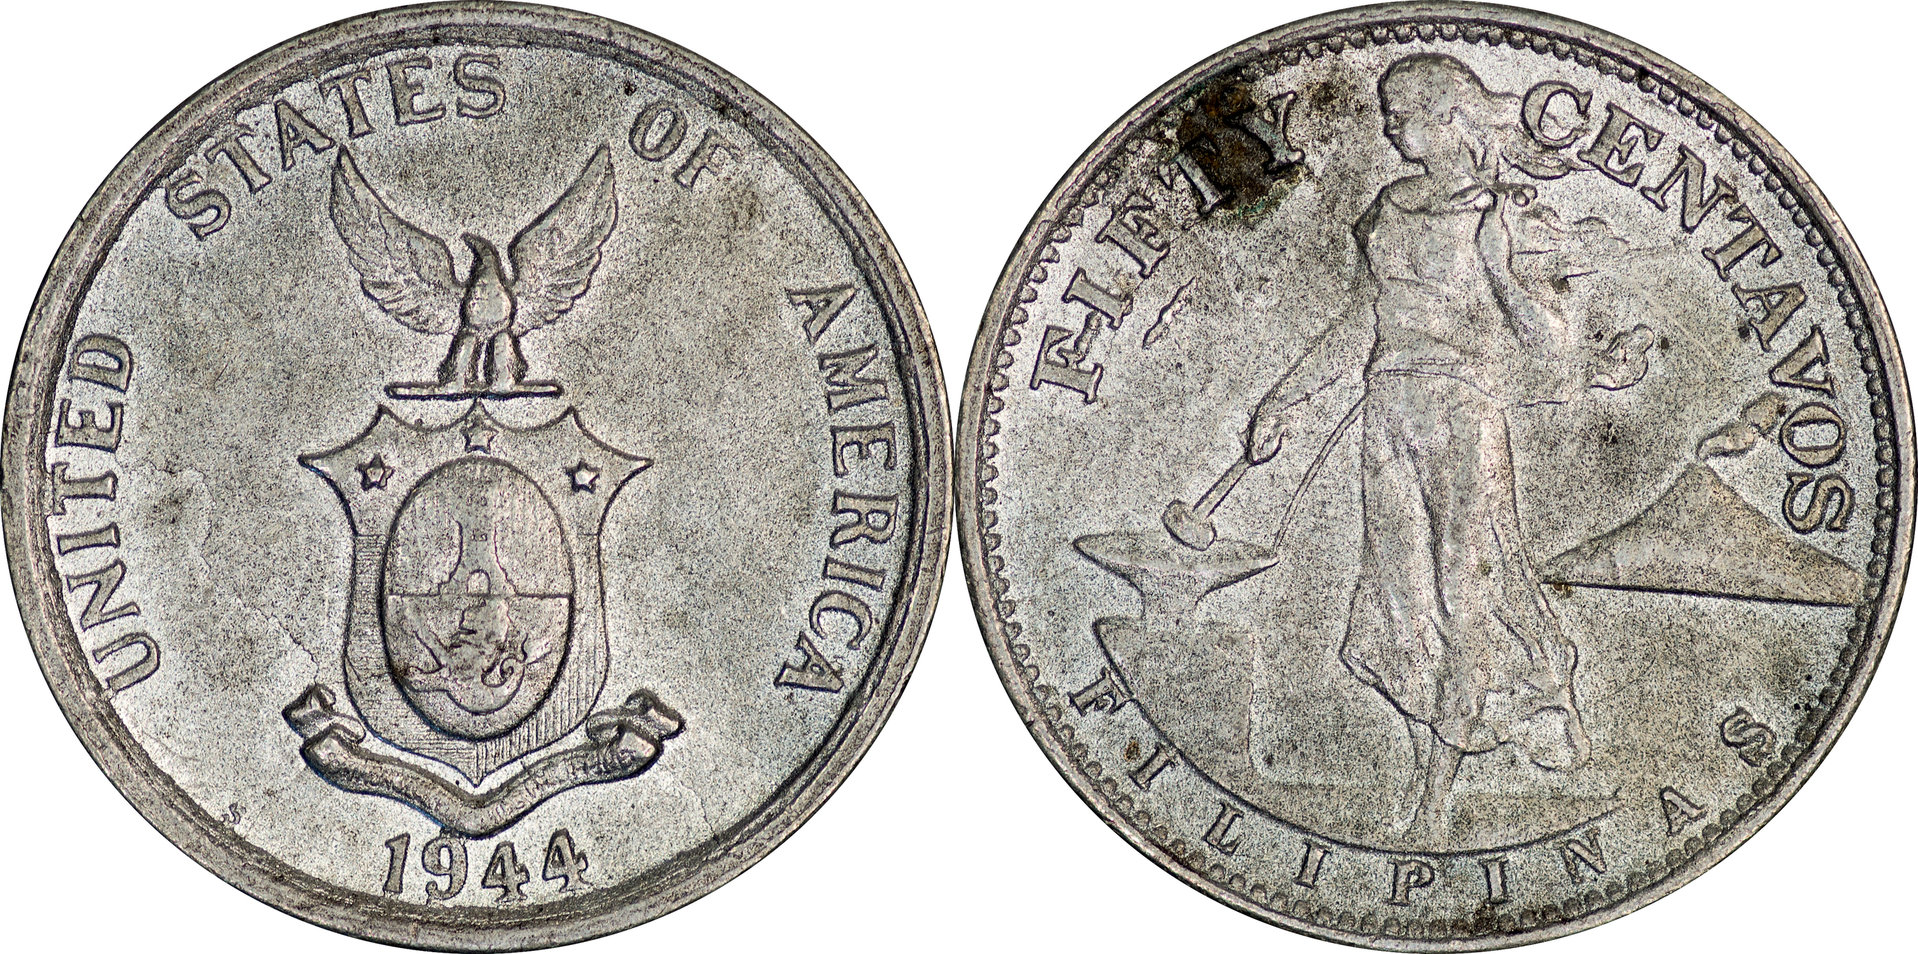 Philippines - 1944 S 50 Centavos.jpg